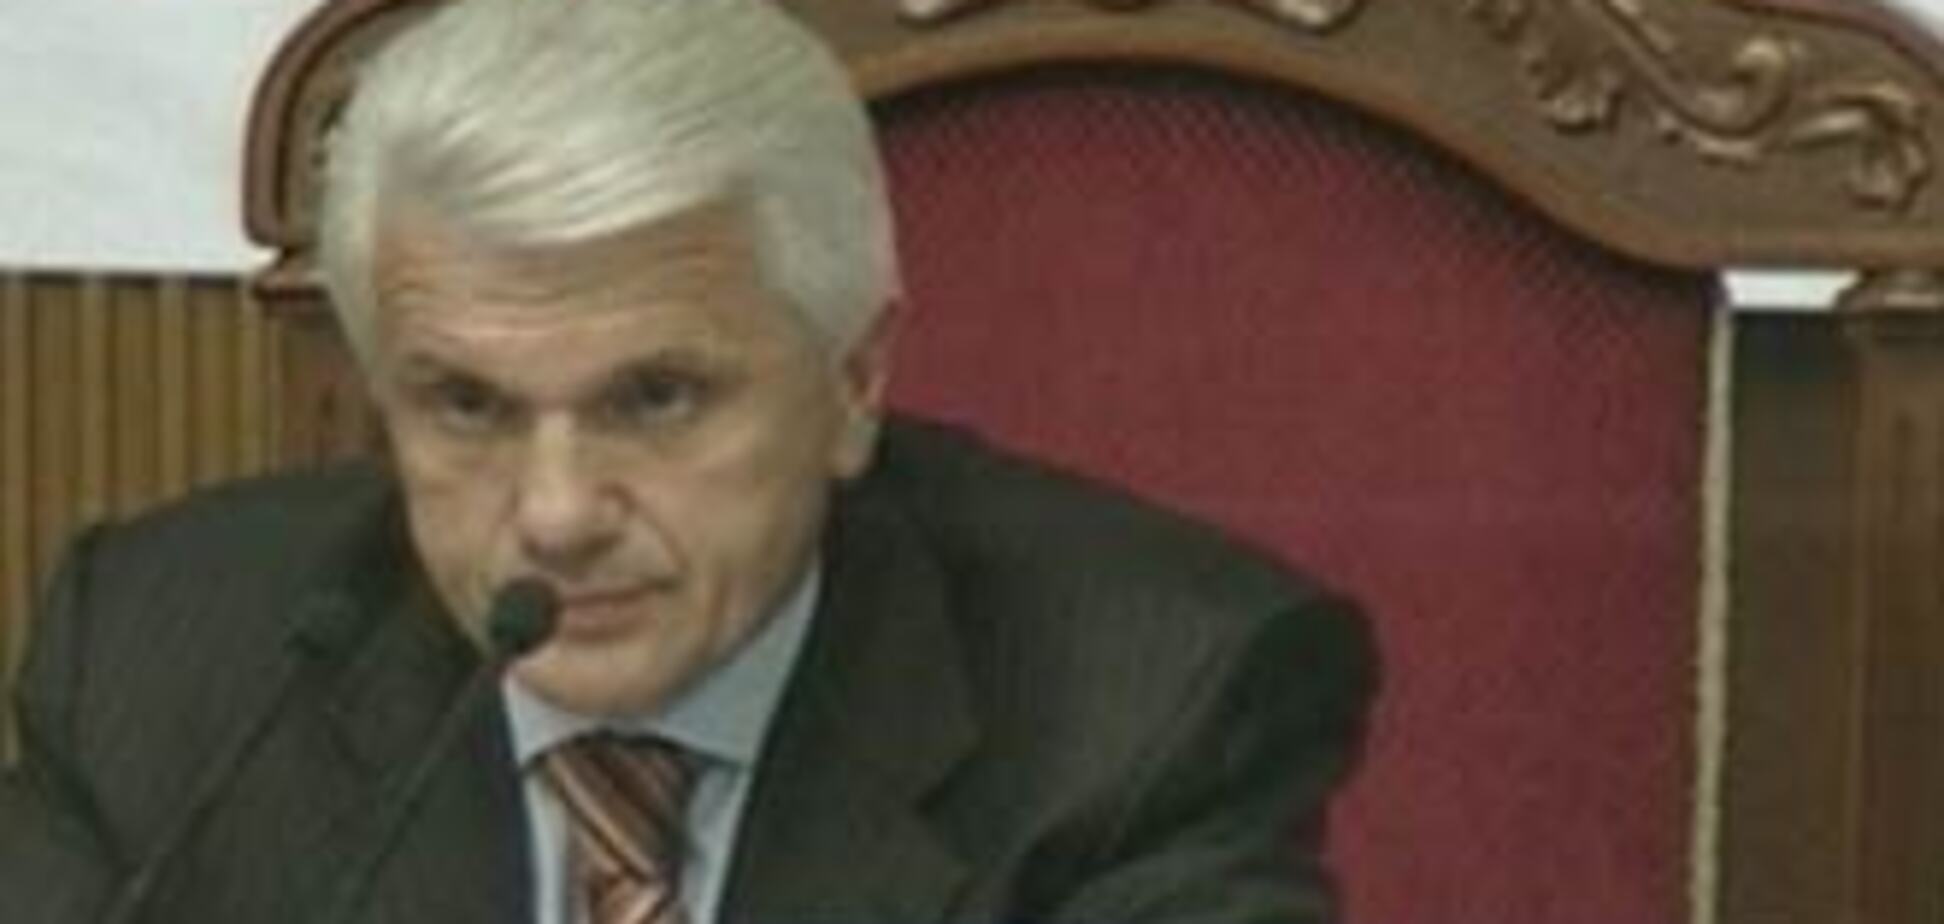 Литвин обвинил Тимошенко в большой афере